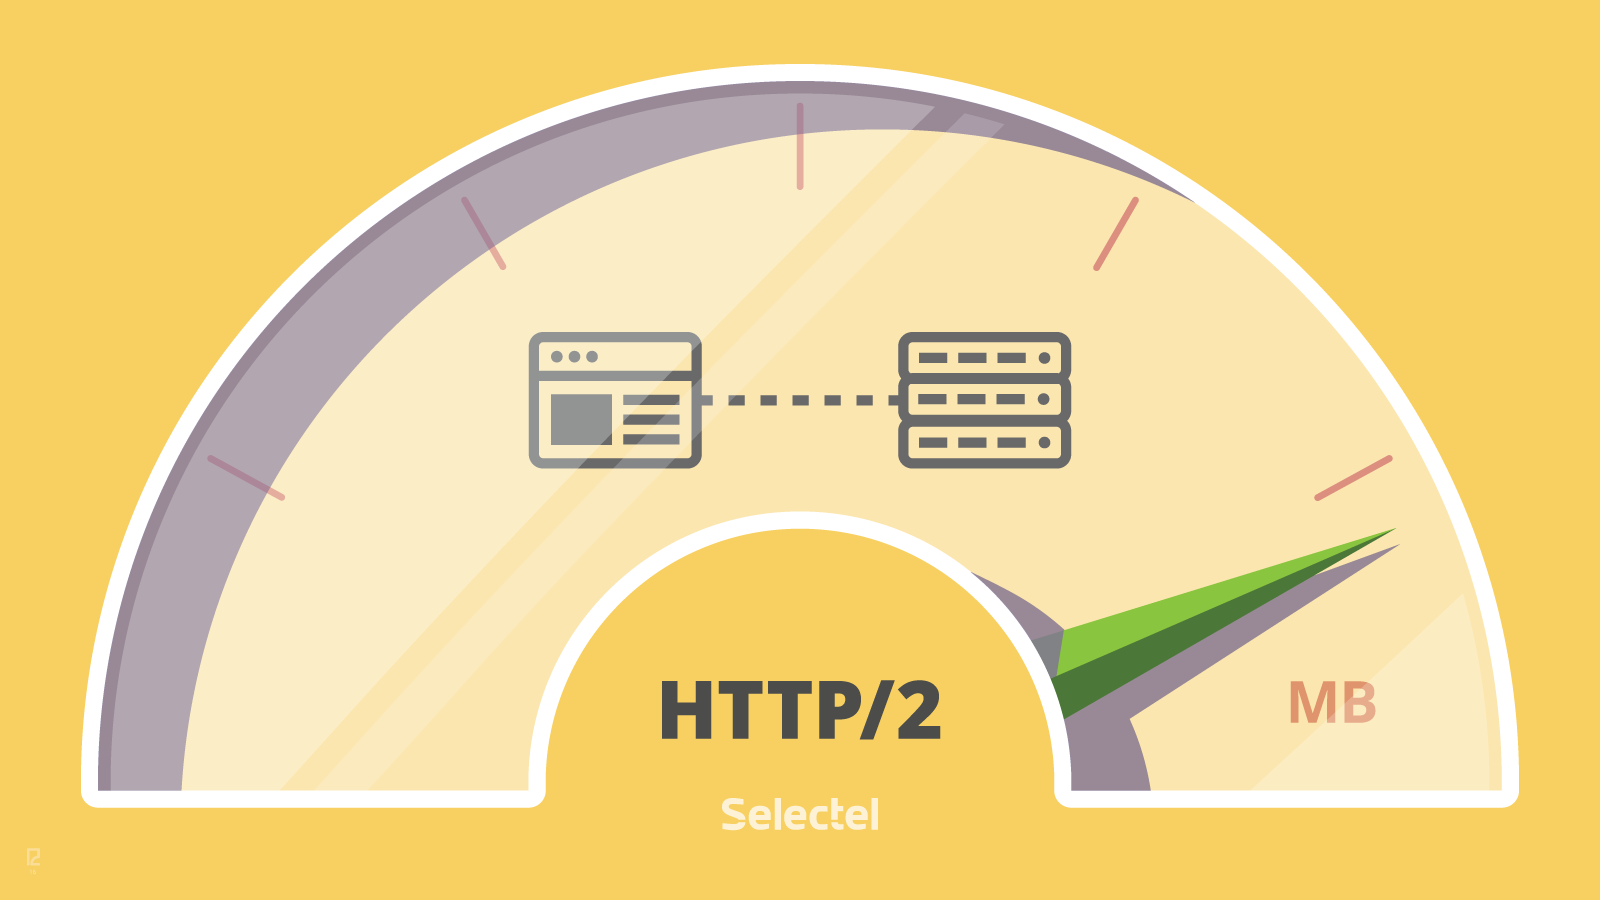 Google использует для сканирования более половины адресов сайтов HTTP/2